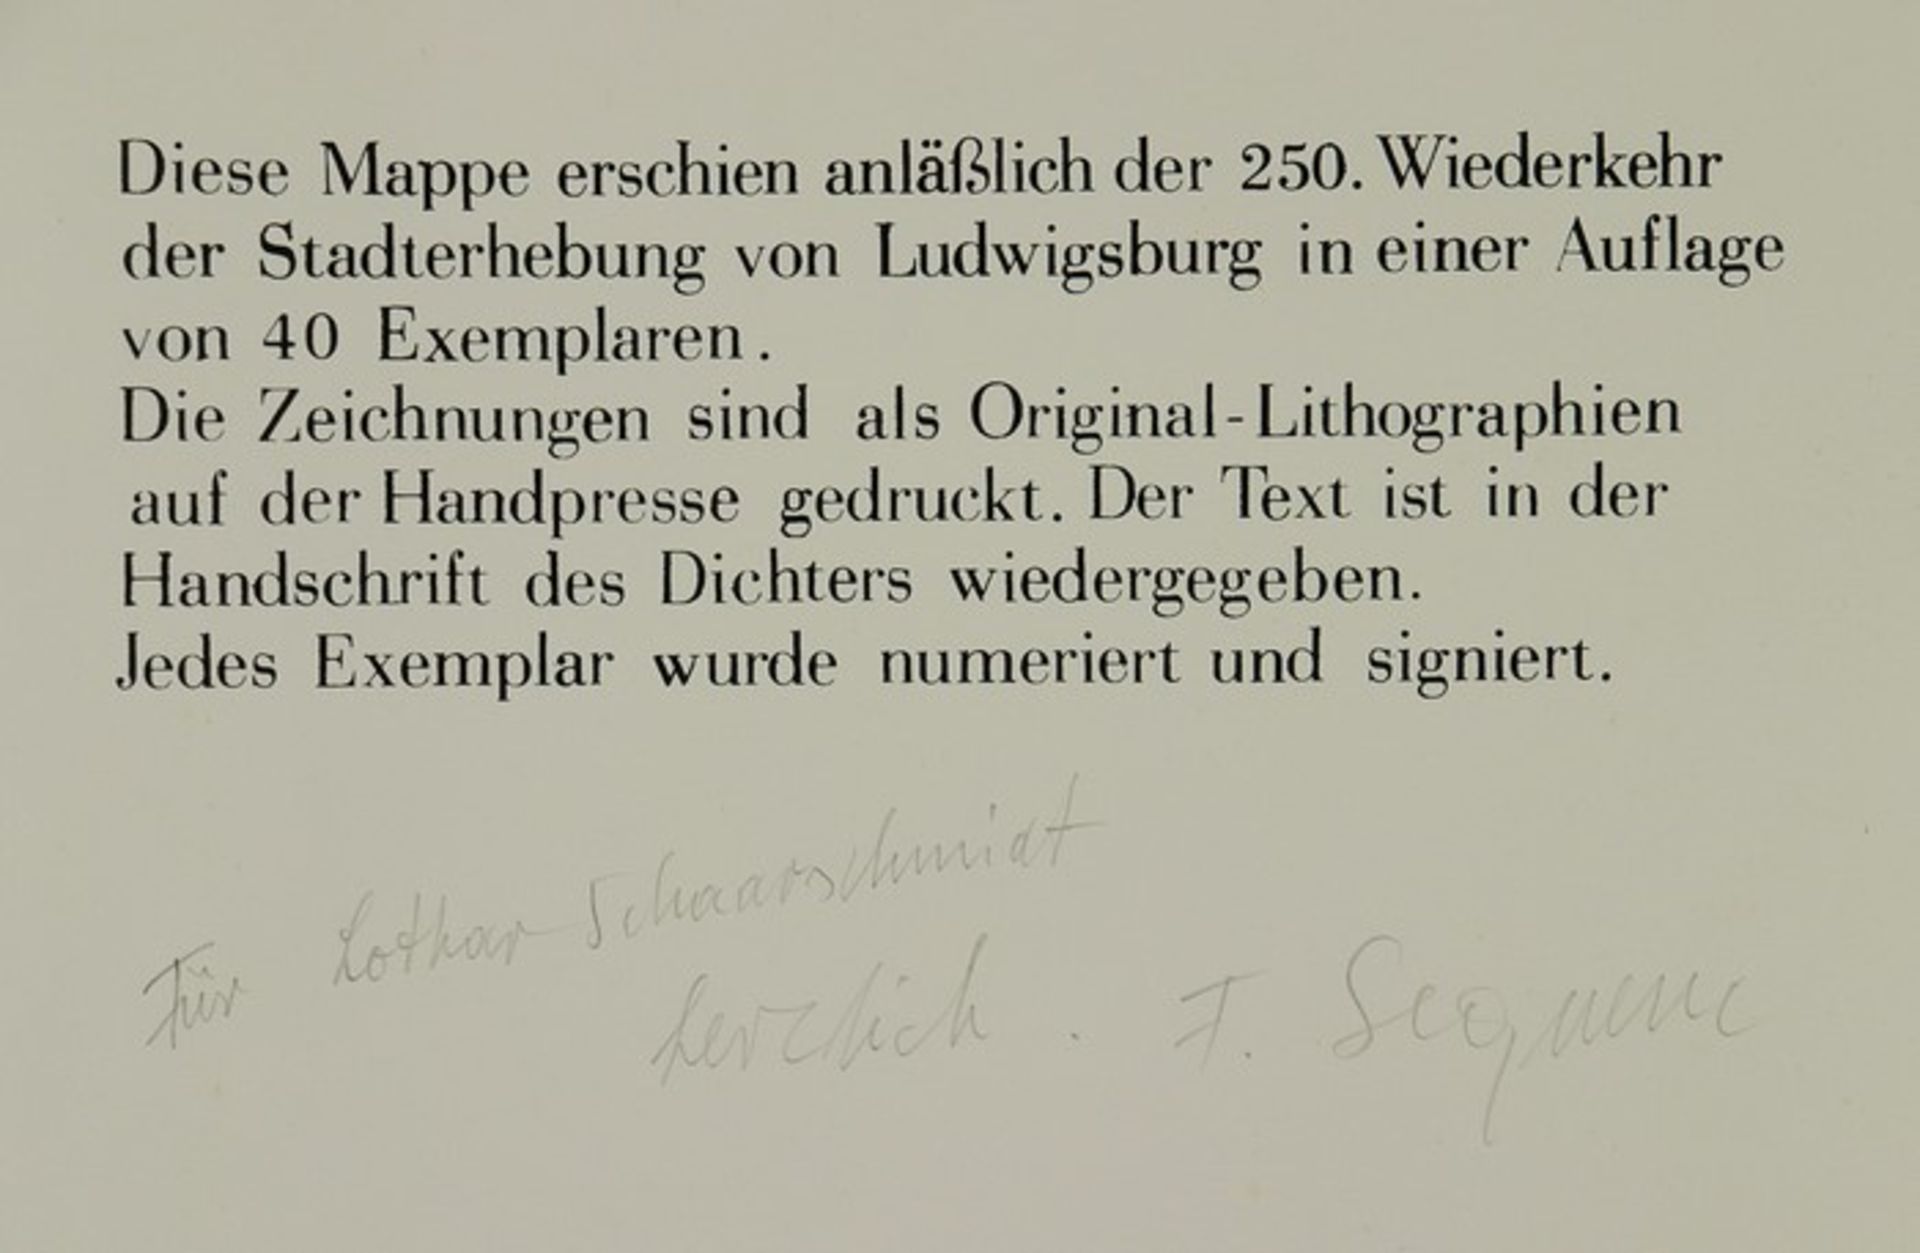 Heuschele, Otto/Sequenc, Franz"Ludwigsburger Silhouetten", Mappe anlässlich der 250. Wiederkehr - Bild 3 aus 5